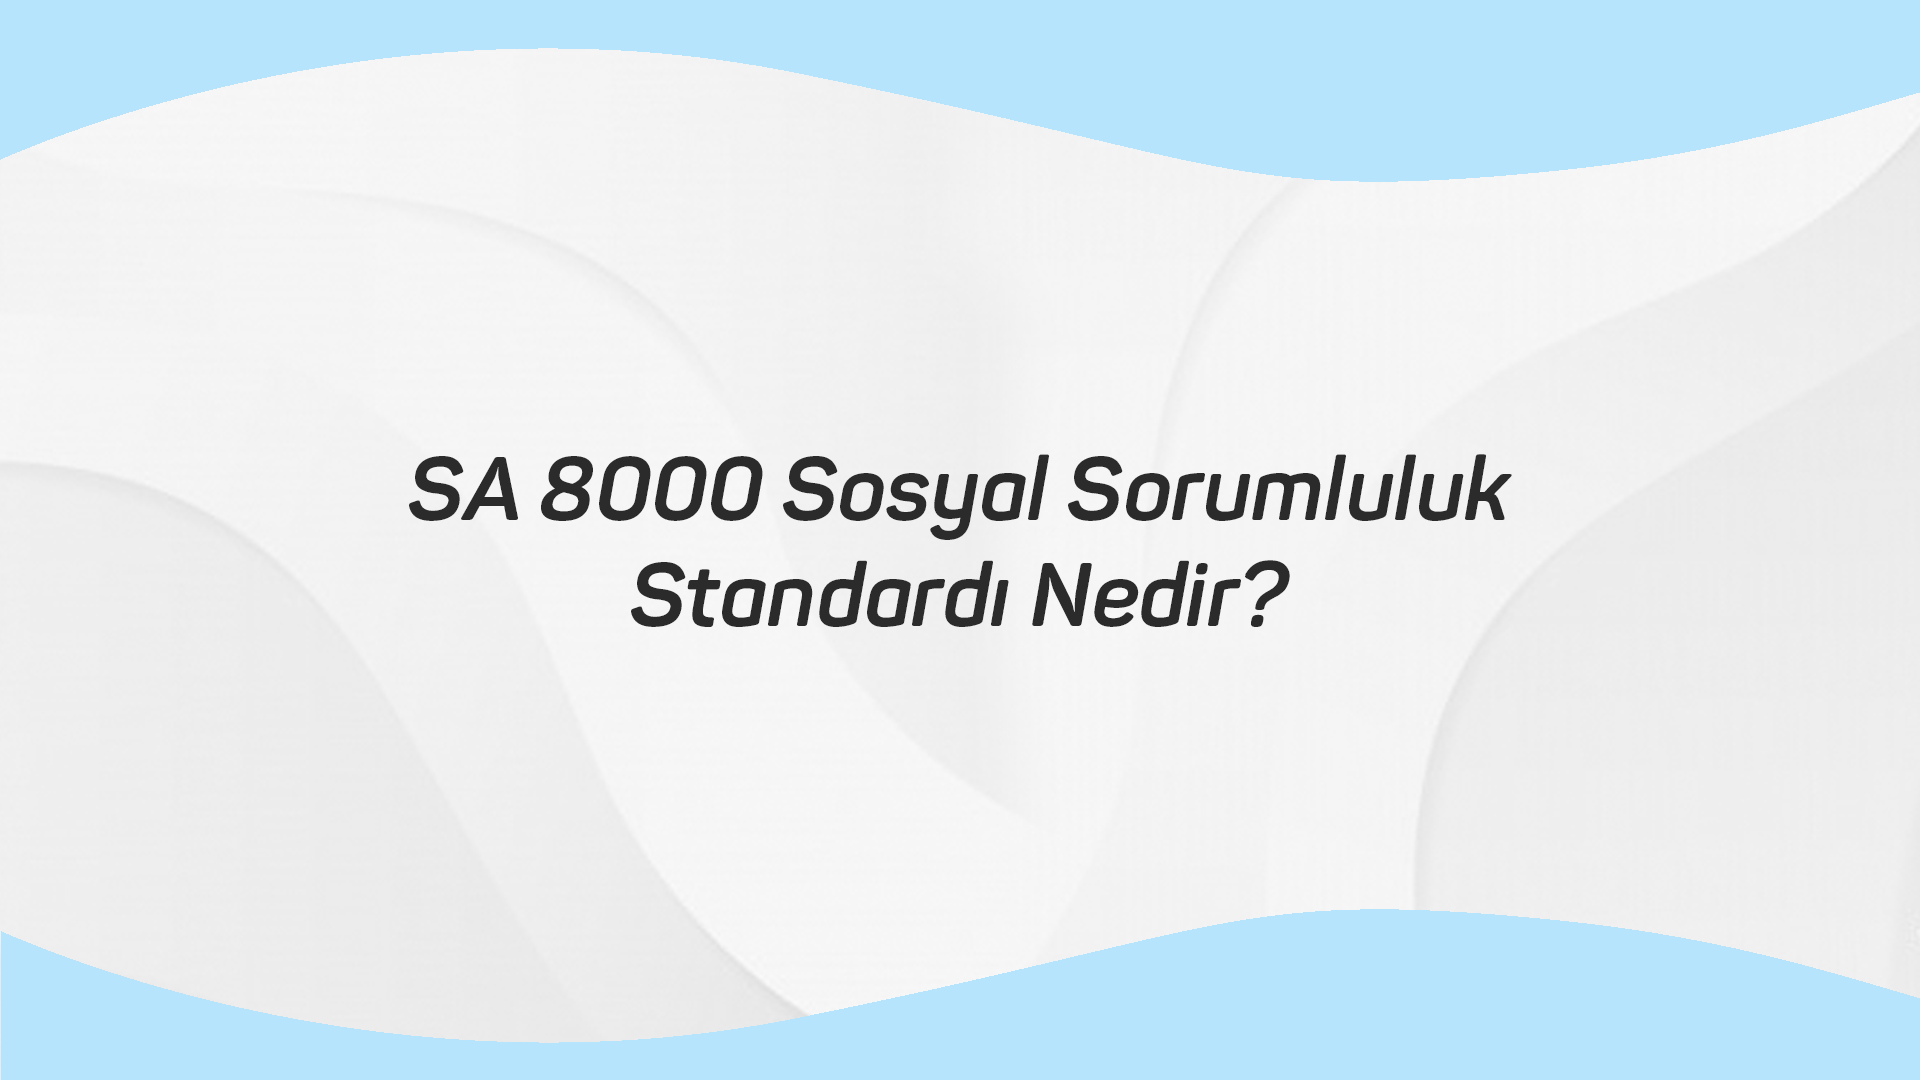 SA 8000 Sosyal Sorumluluk Standardı Nedir?